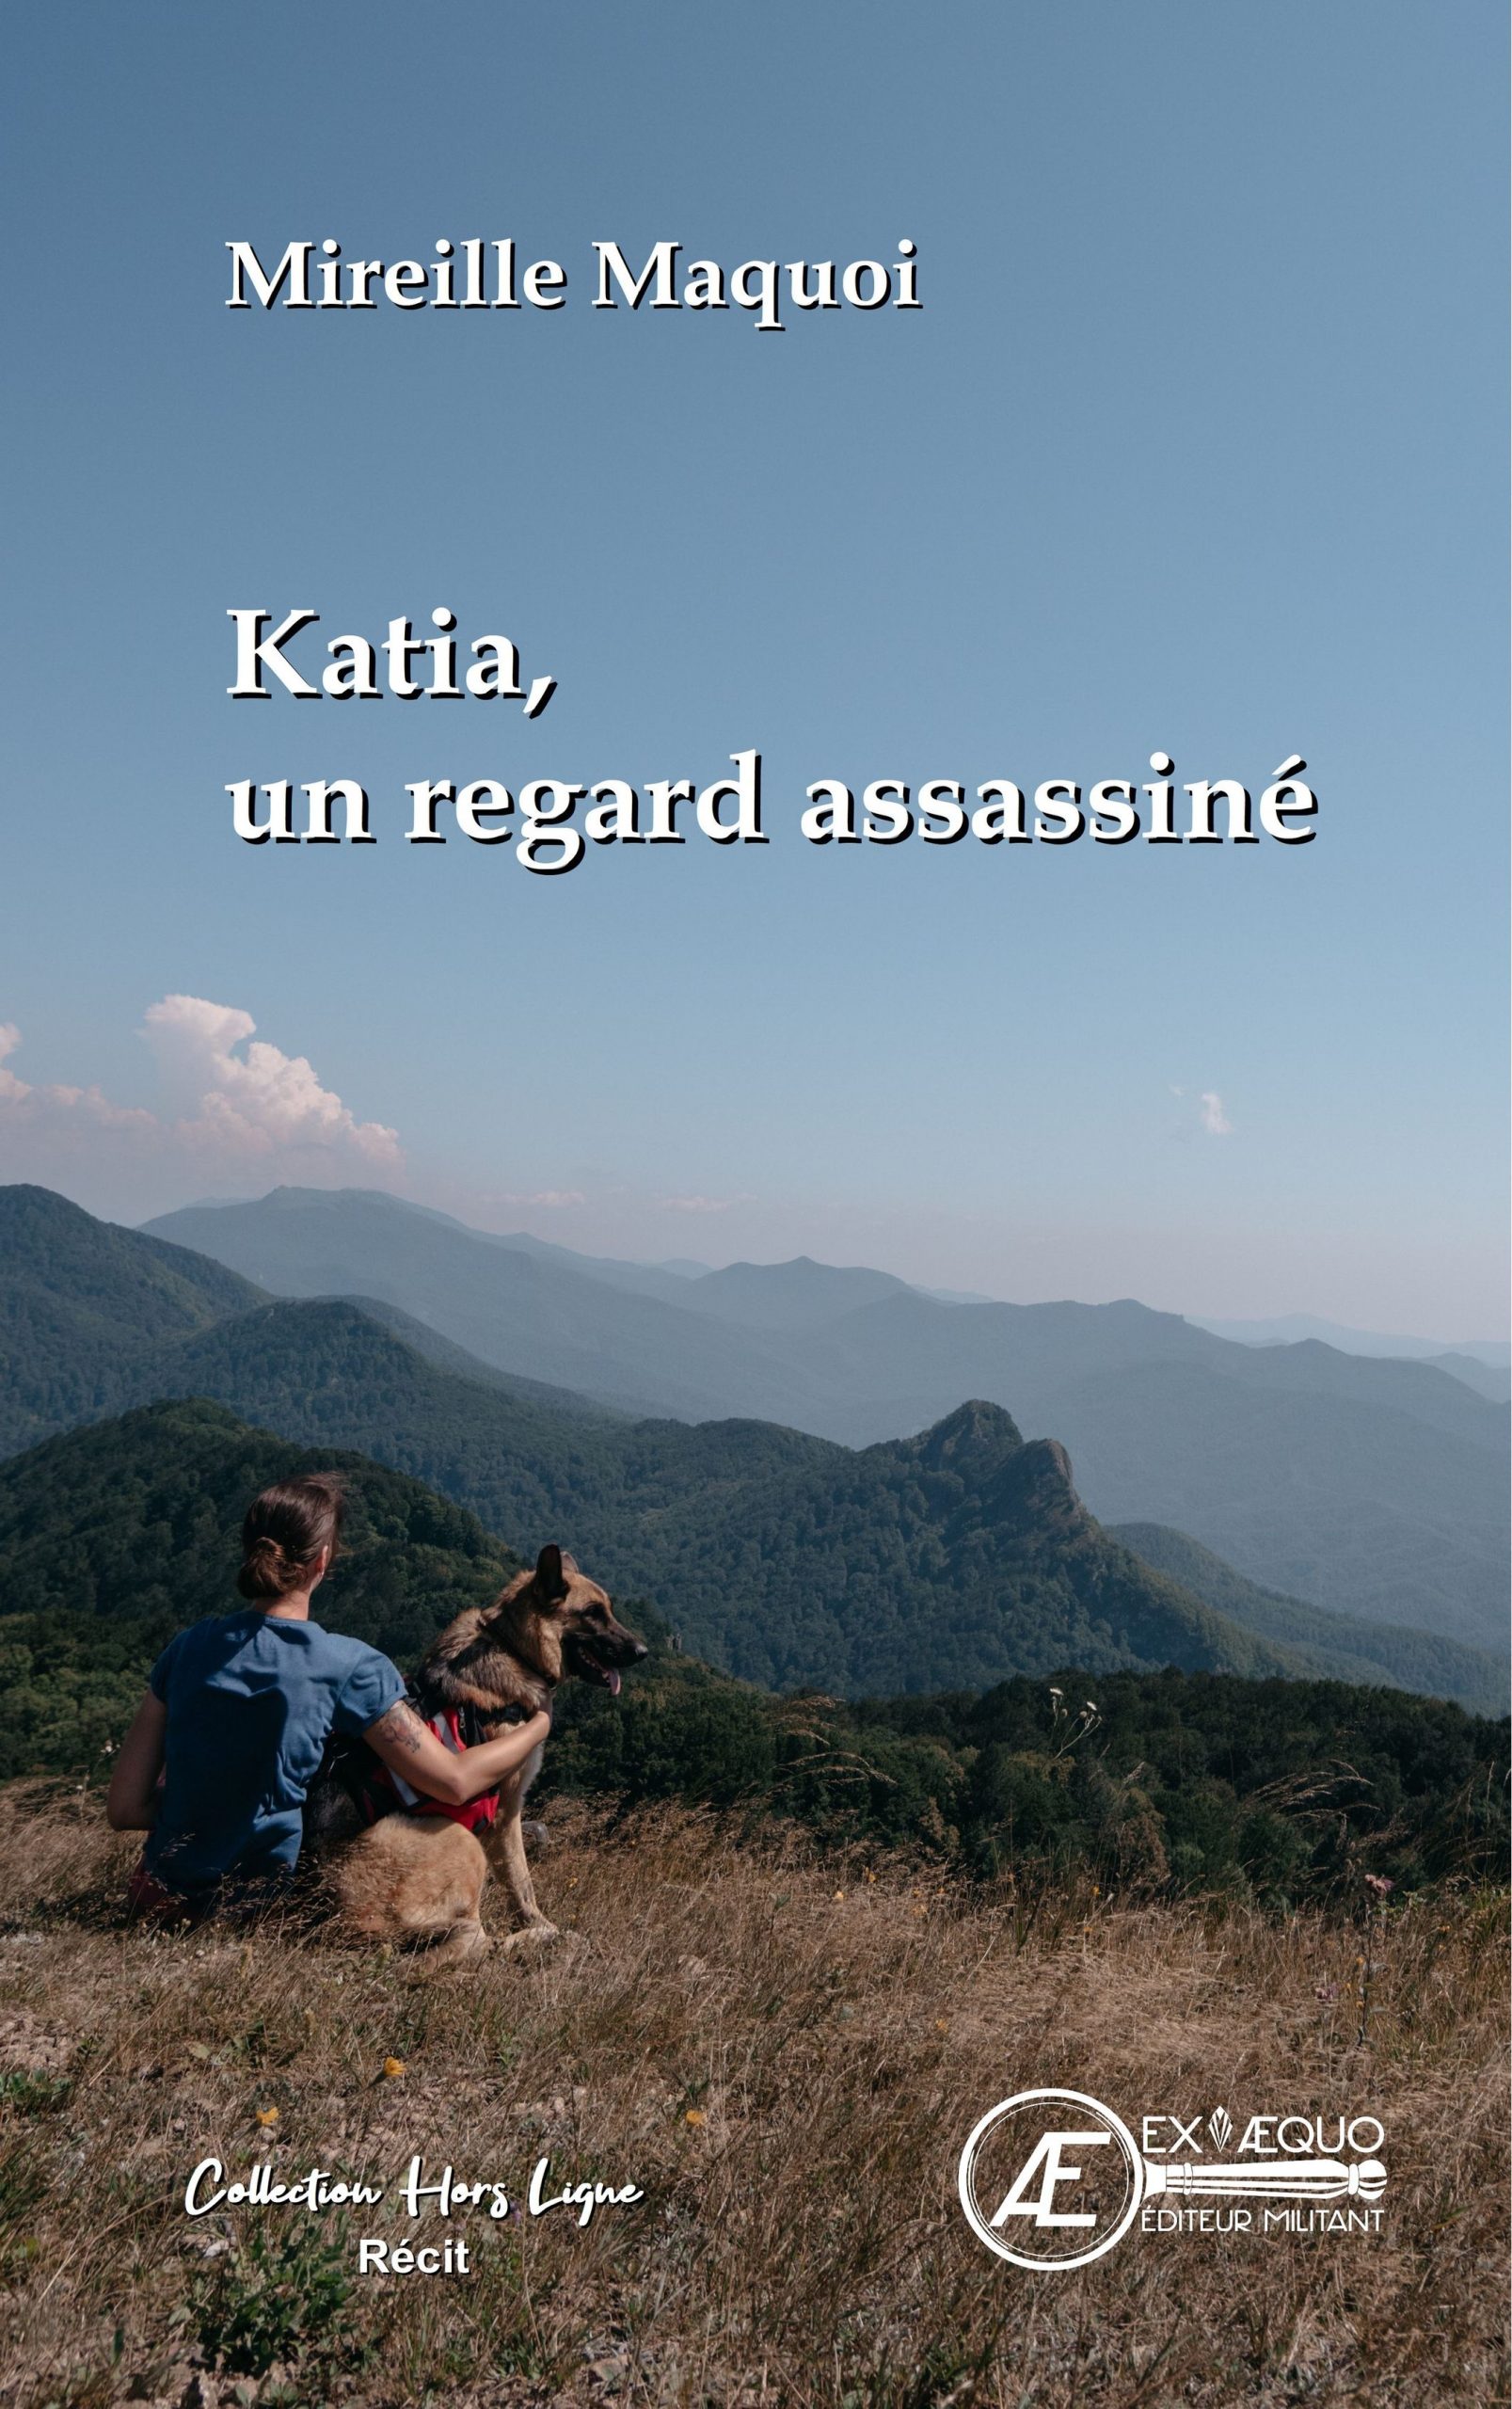 You are currently viewing Katia, un regard assassiné, de Mireille Maquoi